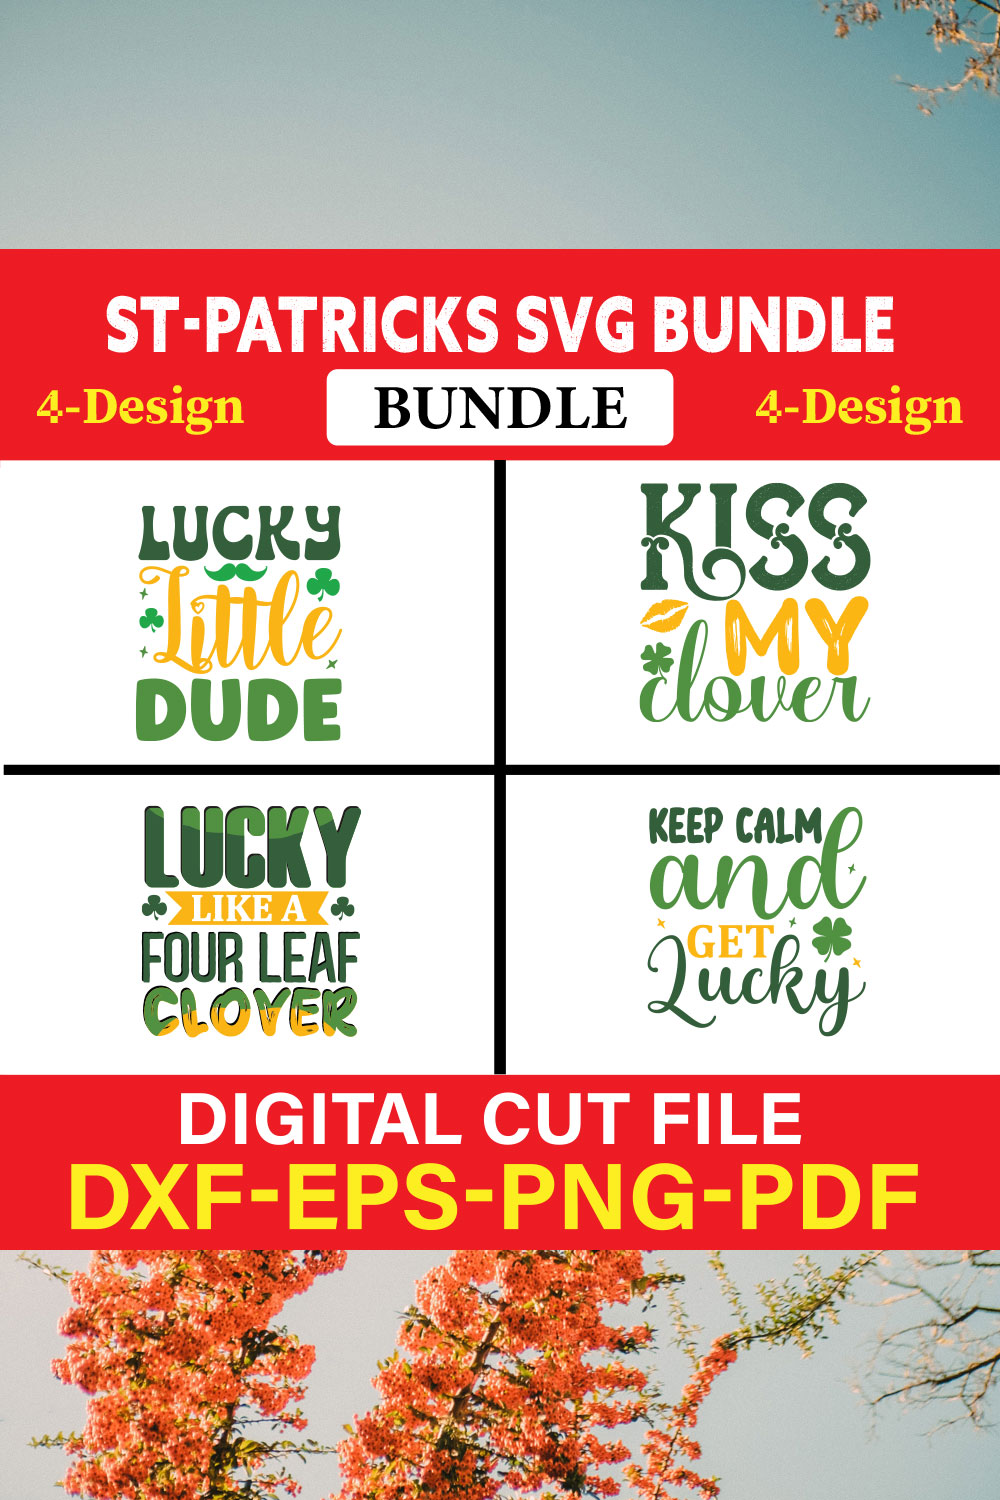 St Patrick's T-shirt Design Bundle Vol-13 pinterest preview image.